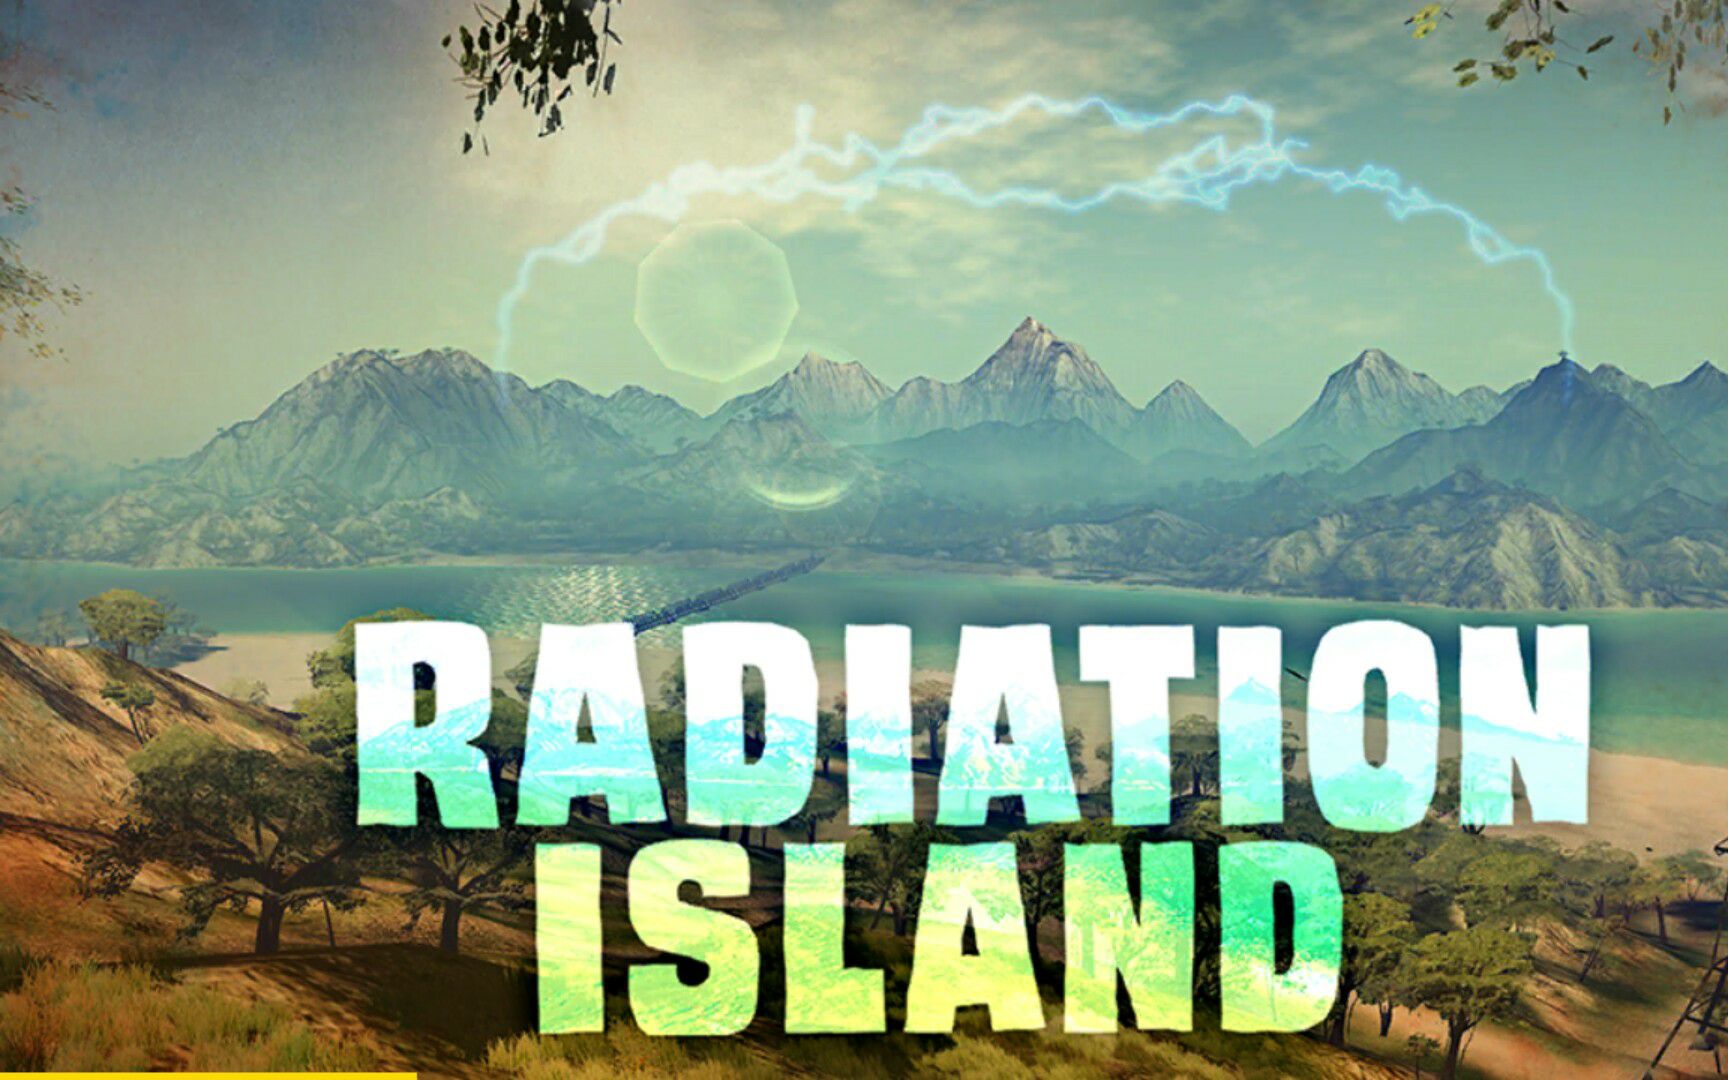 【小源去哪了】辐射岛p10 穿越之异世界旅行!丧尸狂潮的终结